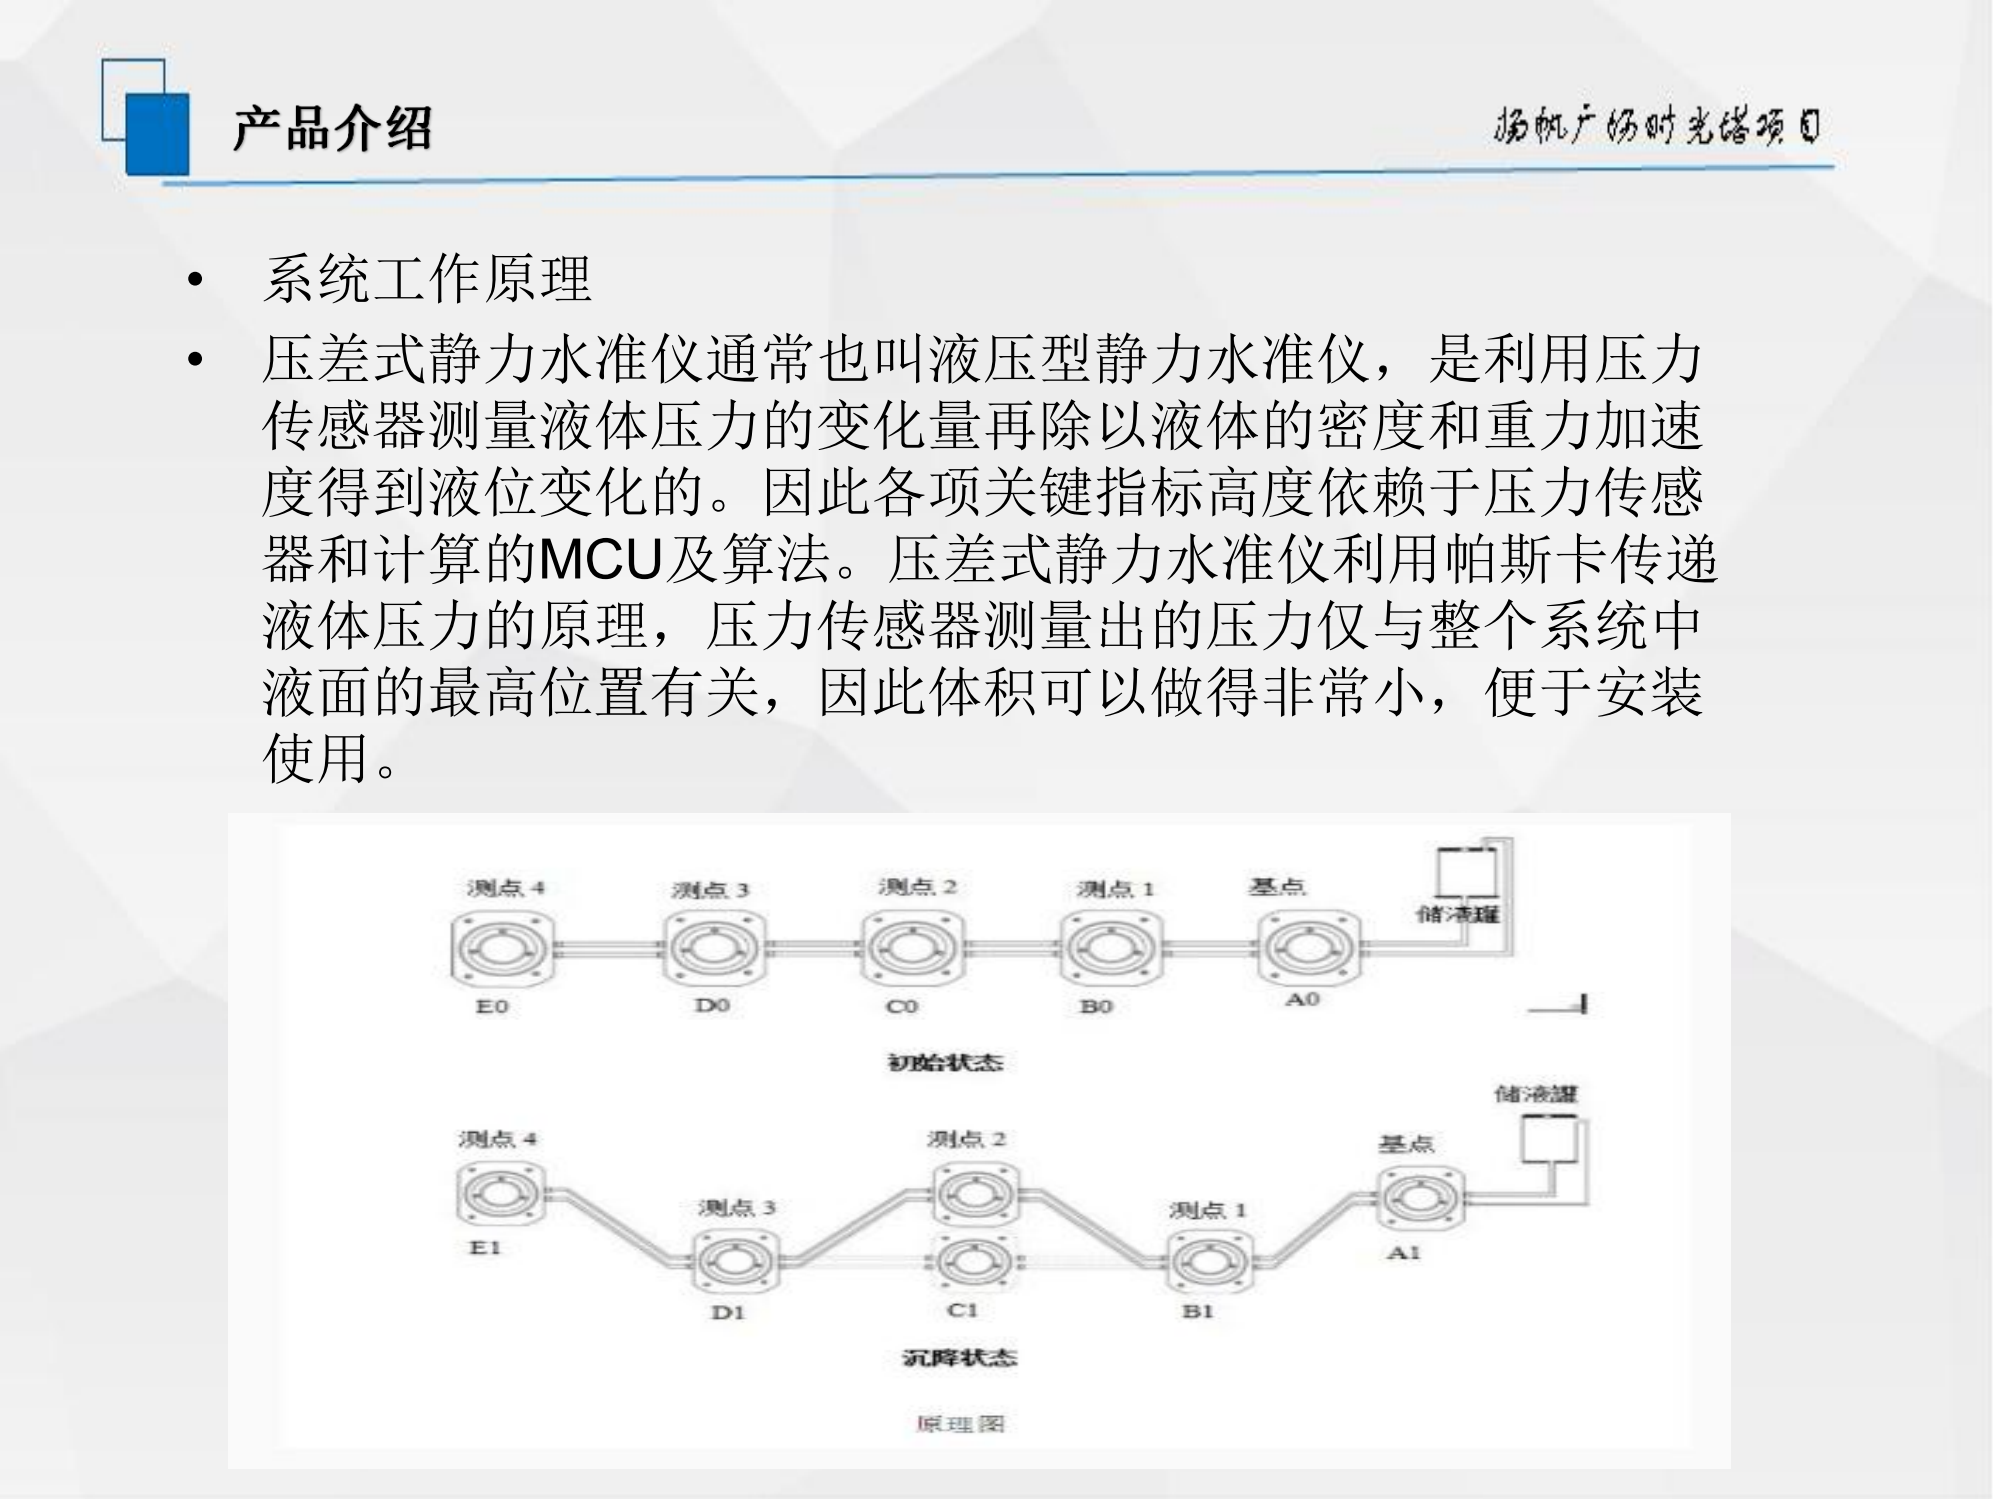 杨帆广场时光塔自动化监测方案—张海贺_10.png